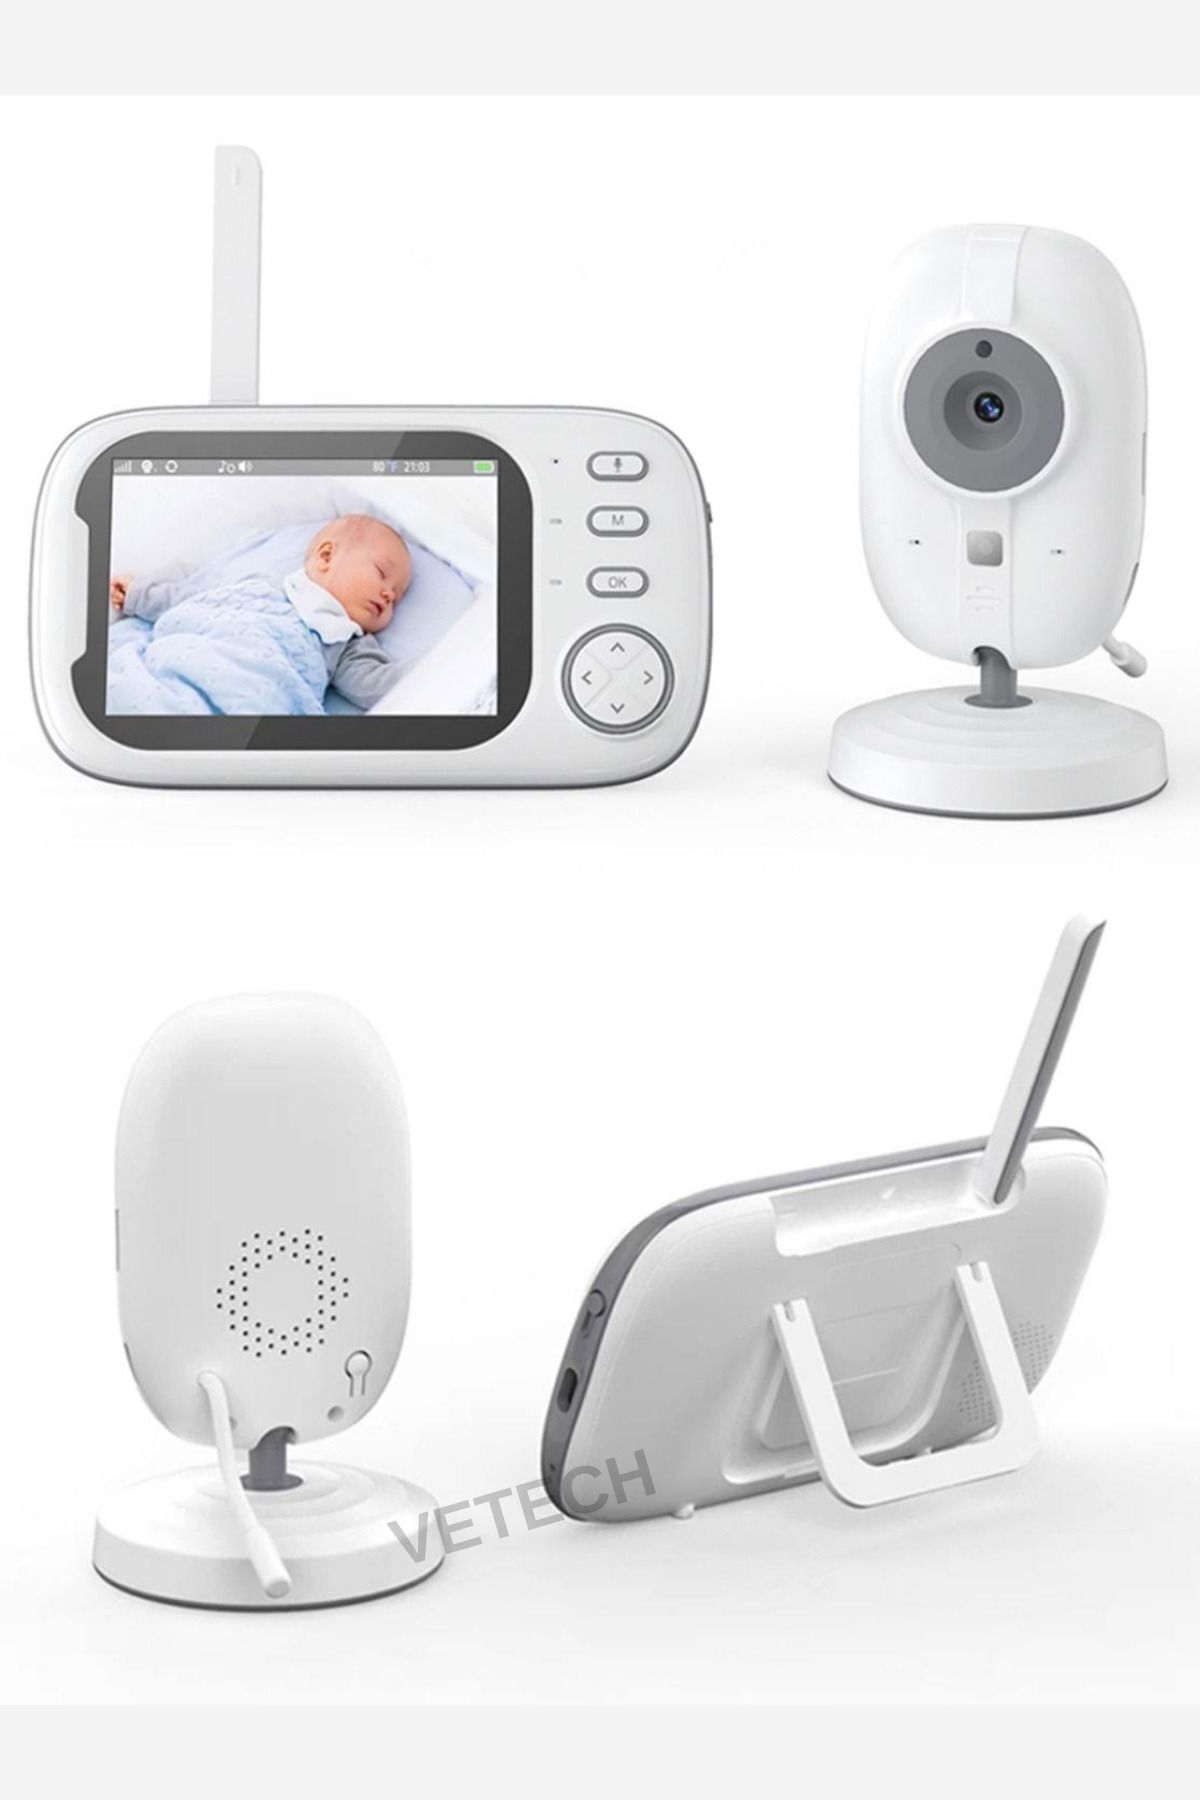 Vetech Dijital Bebek İzleme Cihazı Ekranlı Bebek İzleme Kamerası Dahili Mikrofon & Hoparlör 1MP